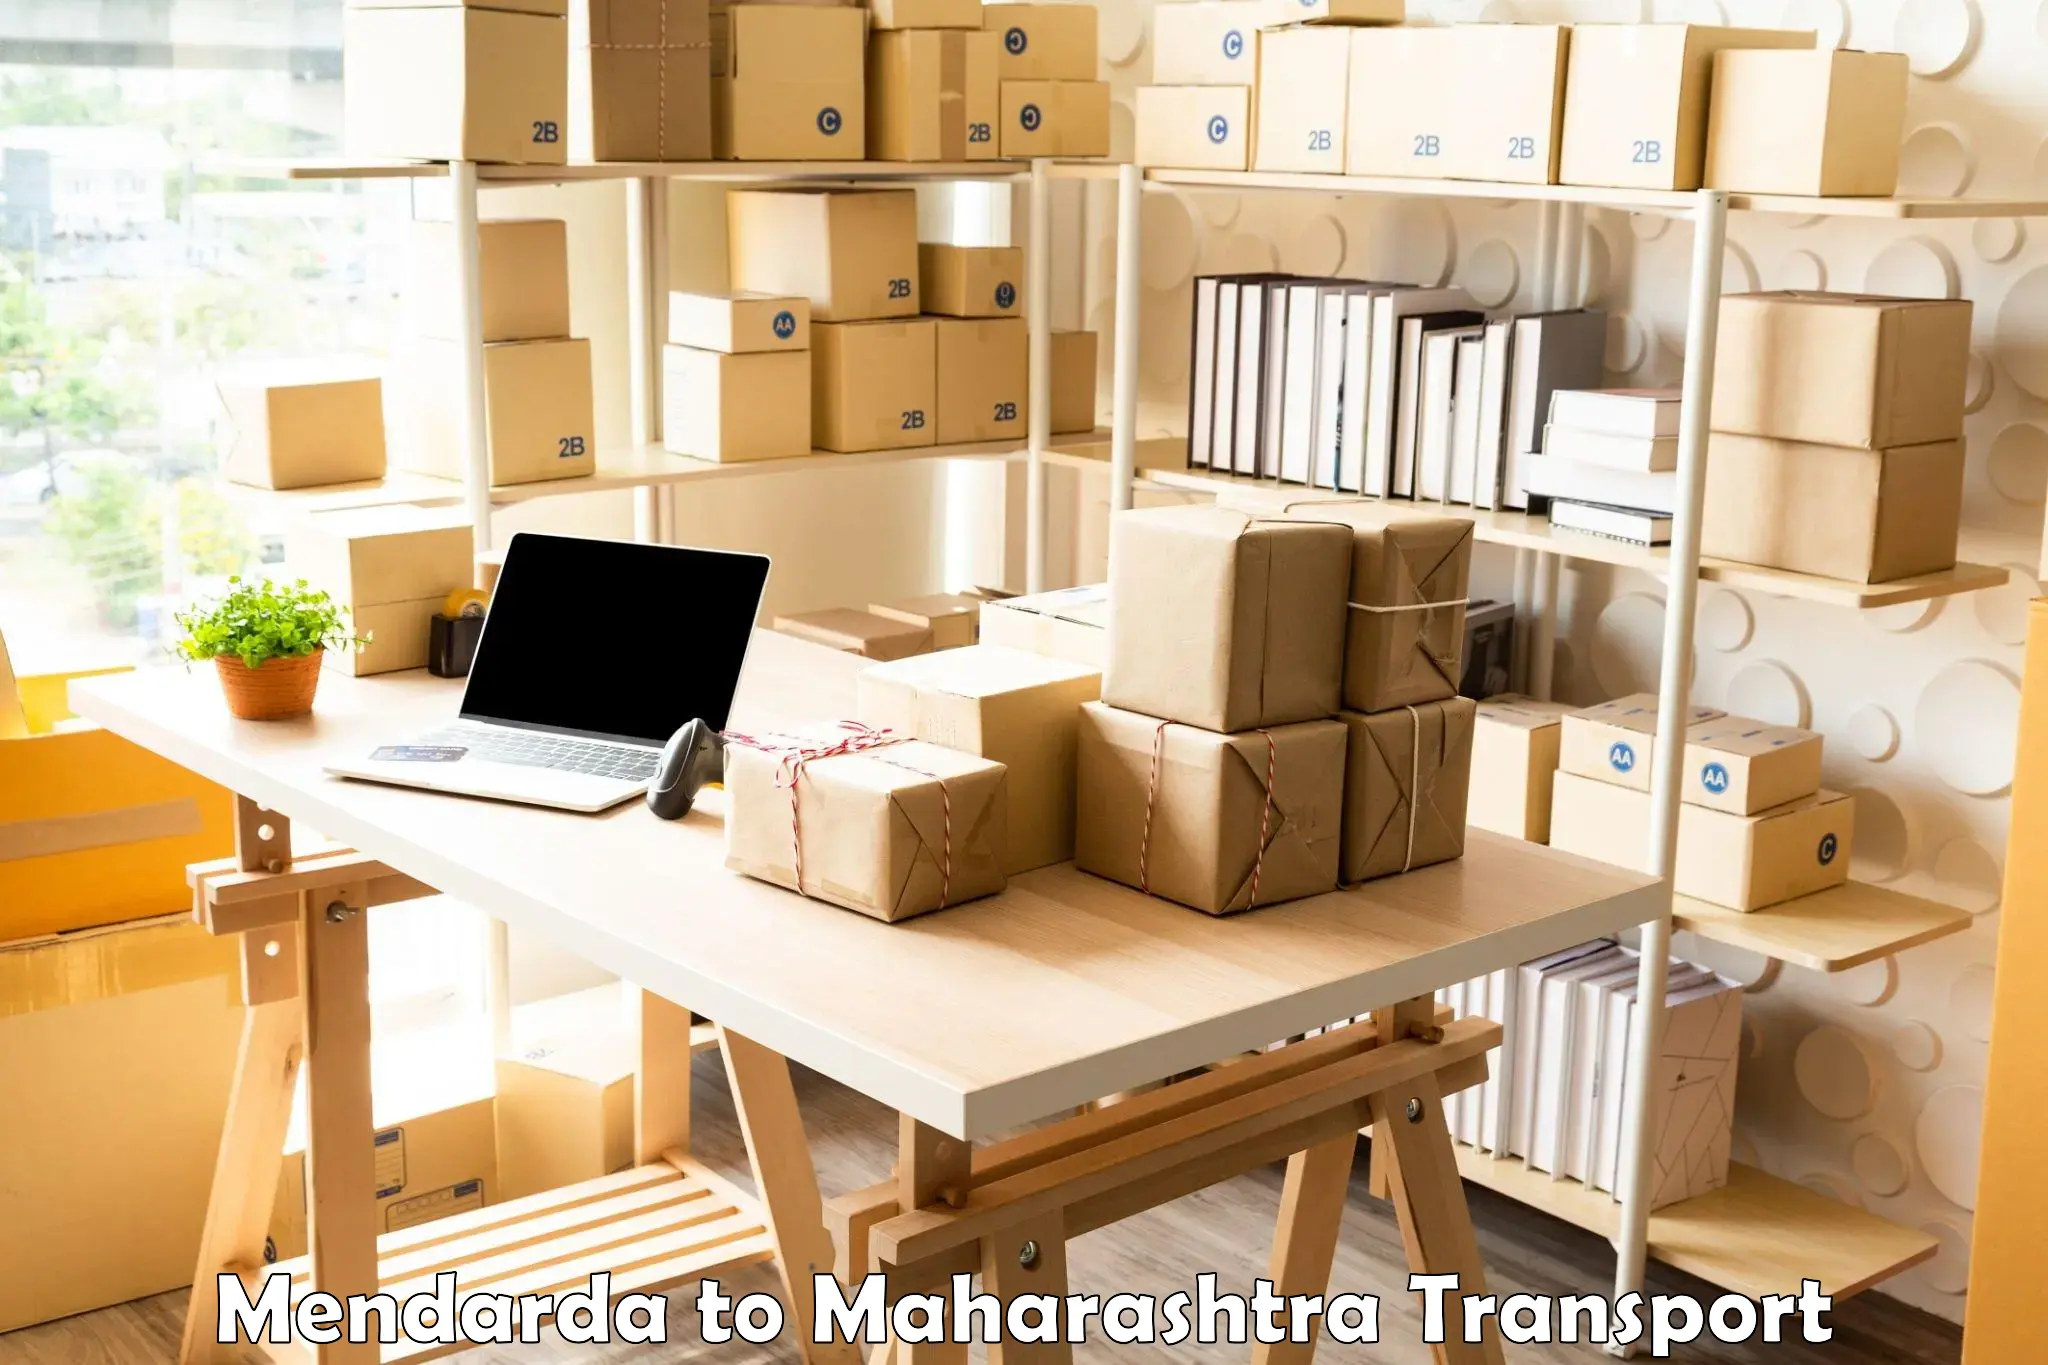 Daily parcel service transport Mendarda to Ahmednagar